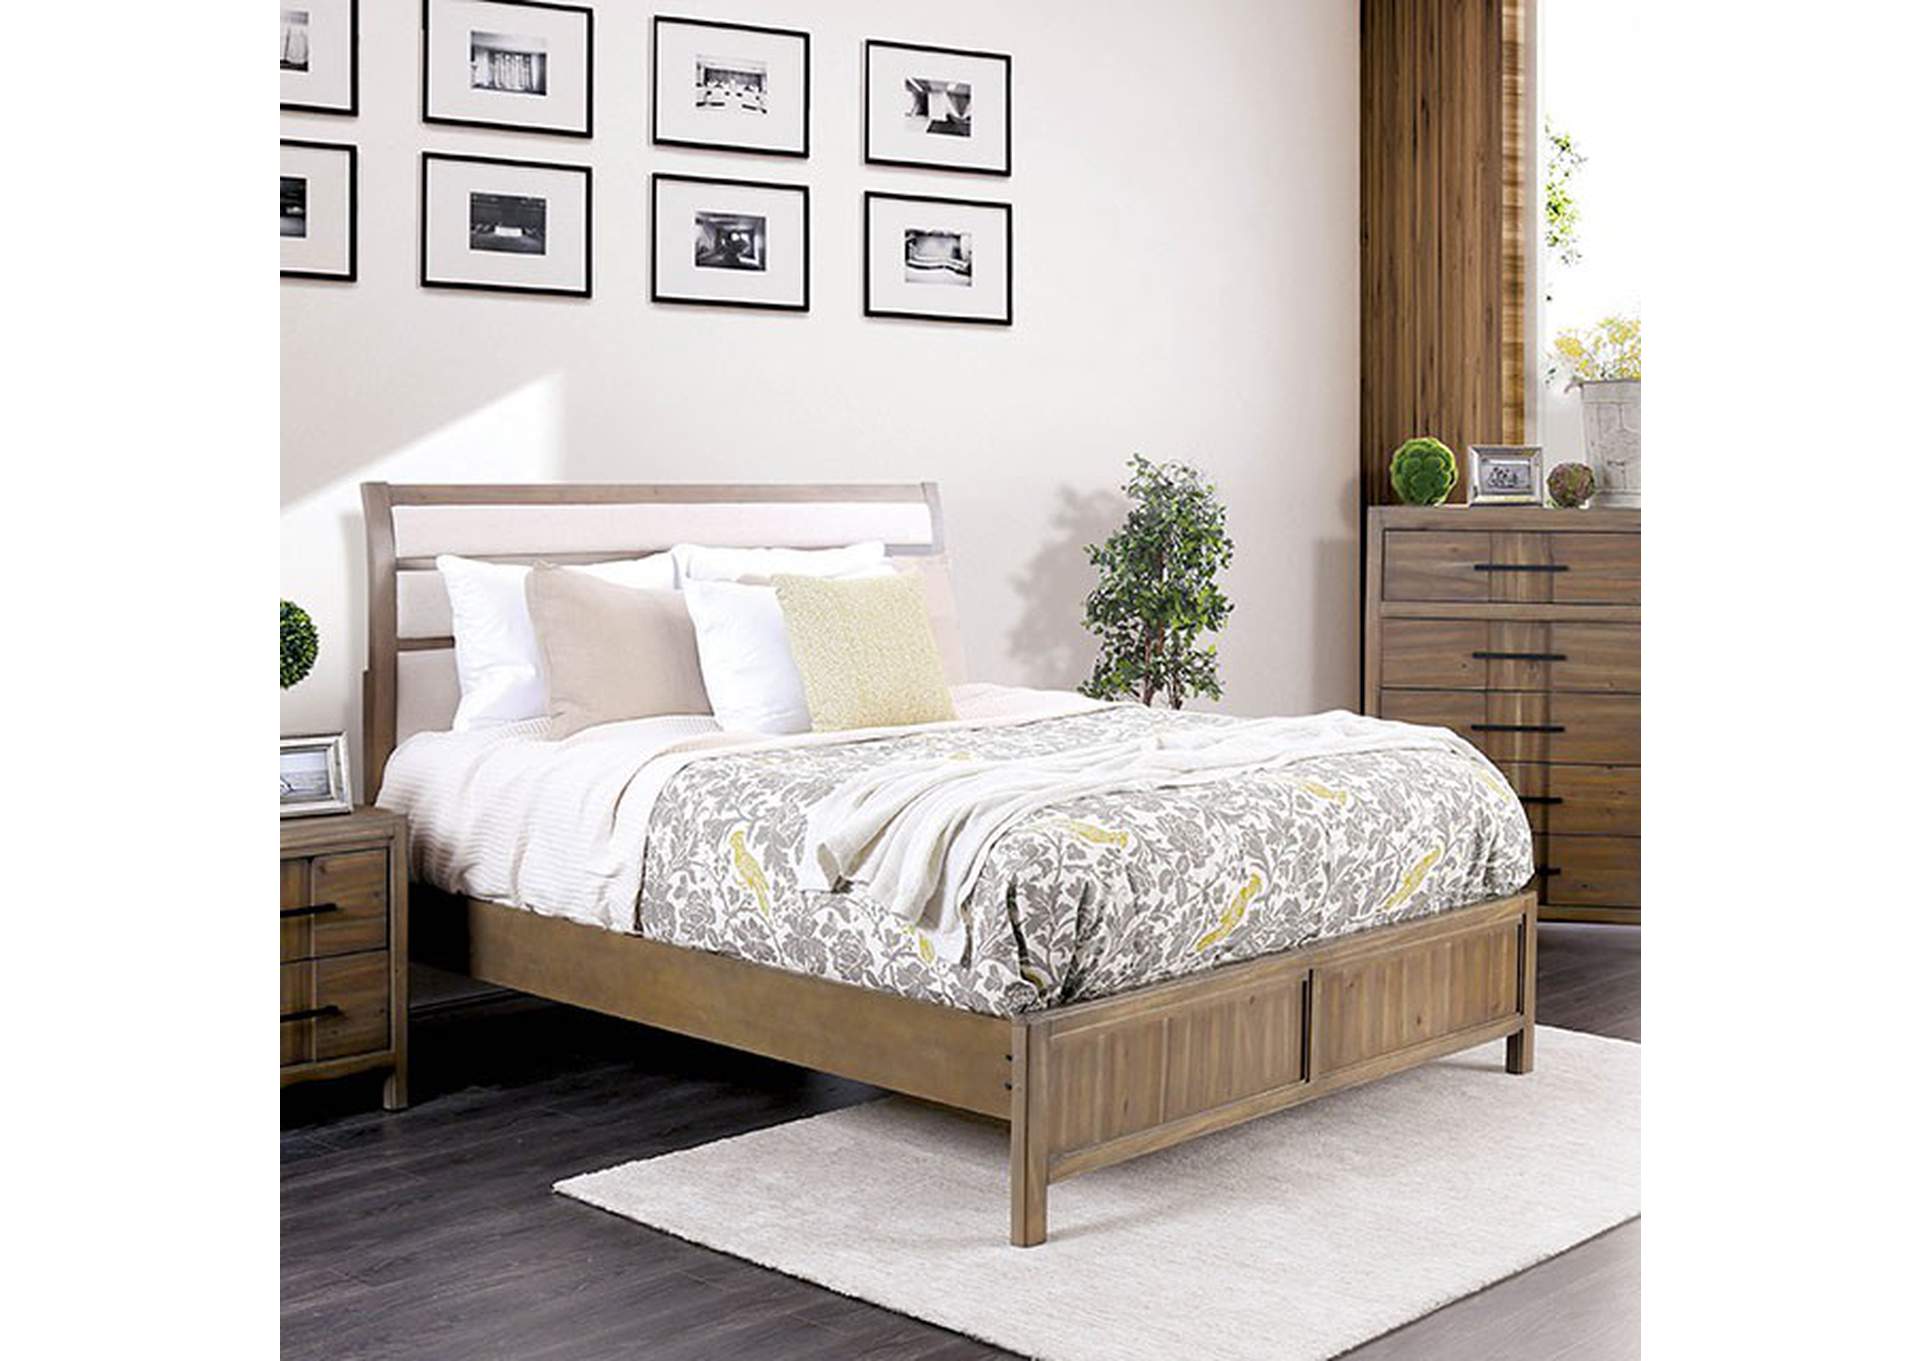 Berenice California King Bed,Furniture of America